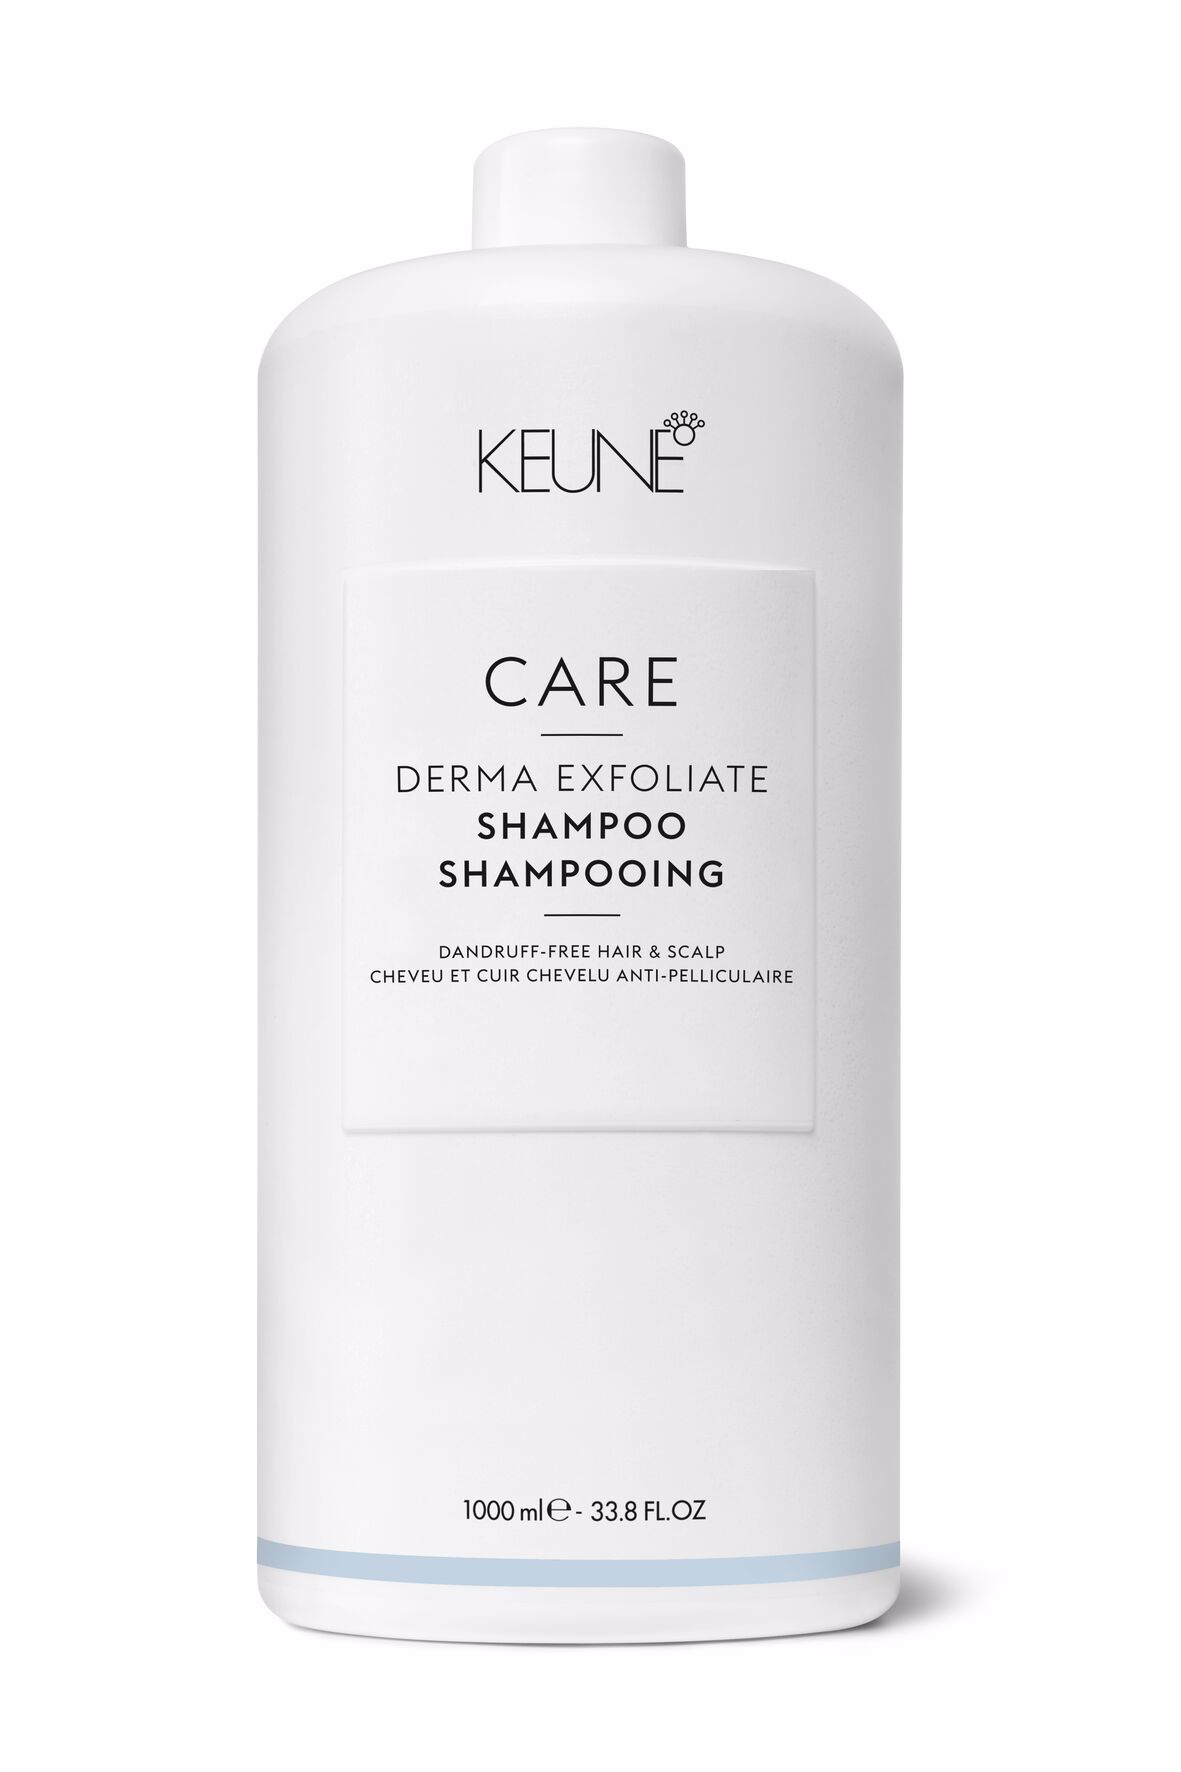 Notre shampooing Derma Exfoliate sans silicone, qui combat les pellicules, apaise le cuir chevelu, élimine les flocons de pellicules visibles et favorise des cheveux en bonne santé. Keune.ch